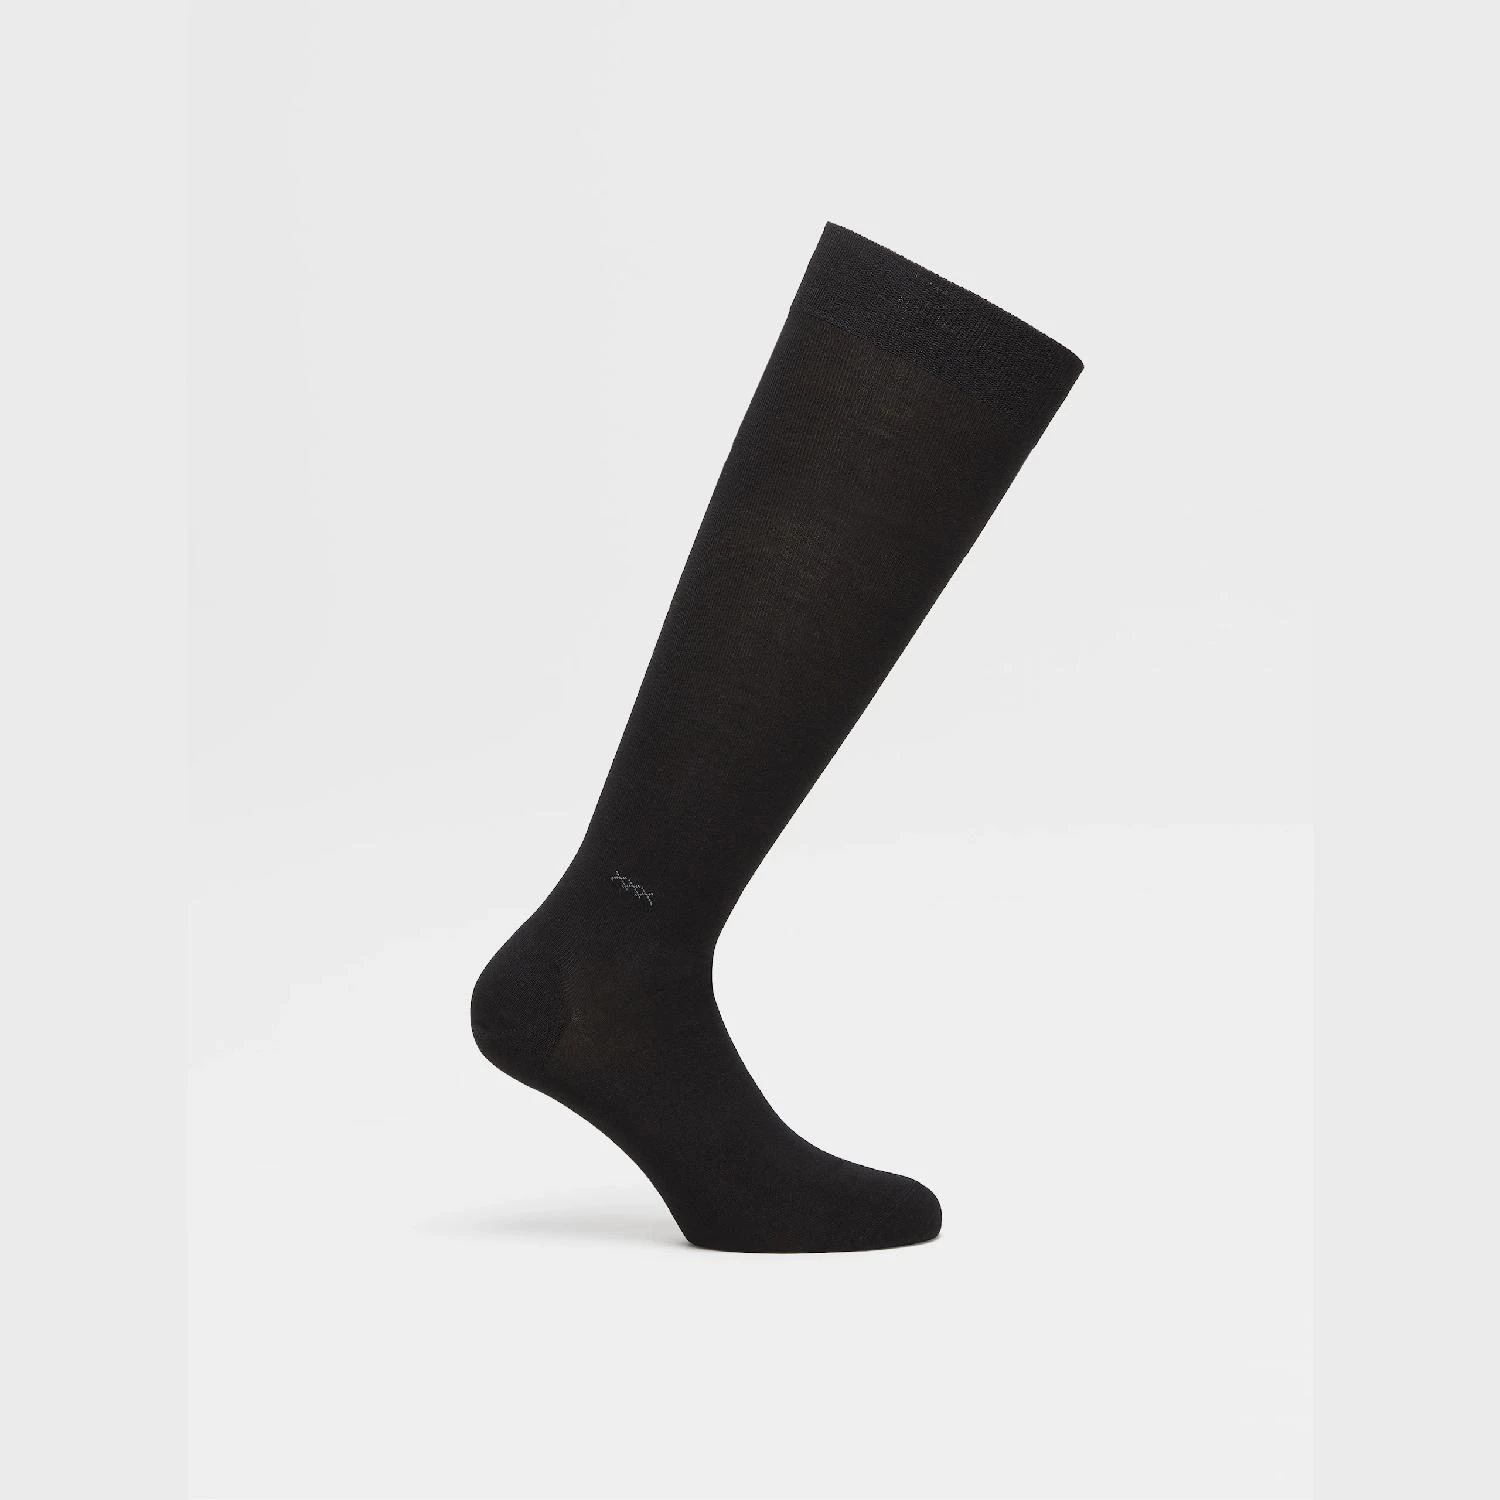 包邮包税【预售7天发货】 ZEGNA杰尼亚 23秋冬 男士 袜子 Black Everyday Triple X Mid Calf Socks N5V40-526-001 商品